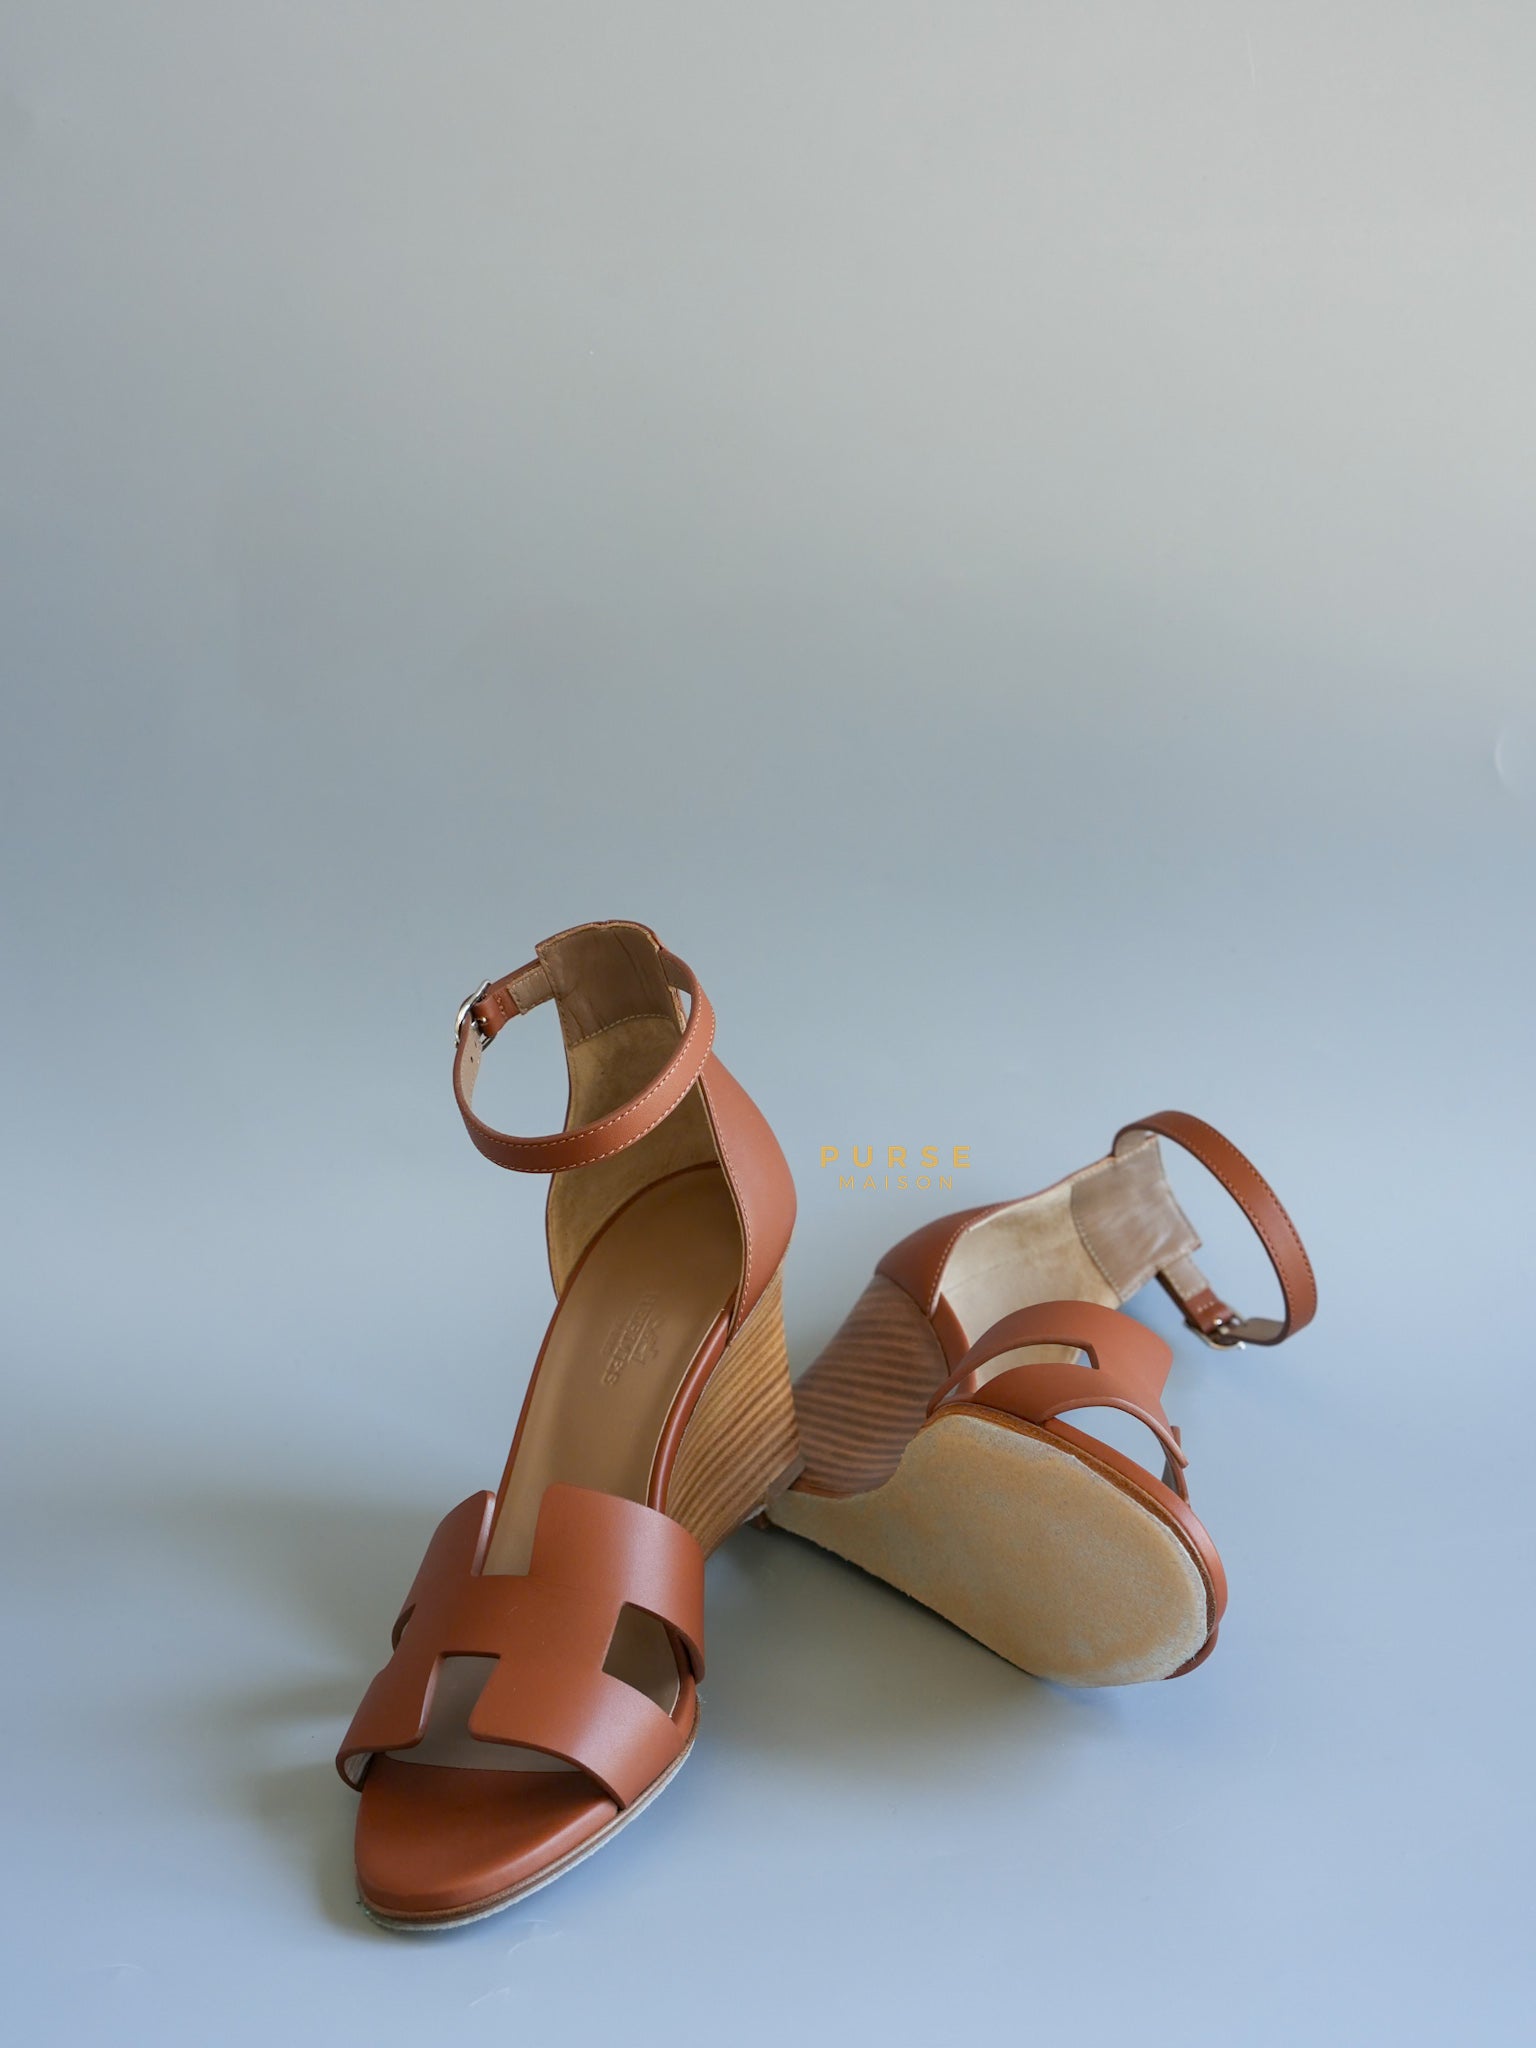 Legend Wedge Ankle Strap Sandals Size 39 EU (25.5cm) | Purse Maison Luxury Bags Shop